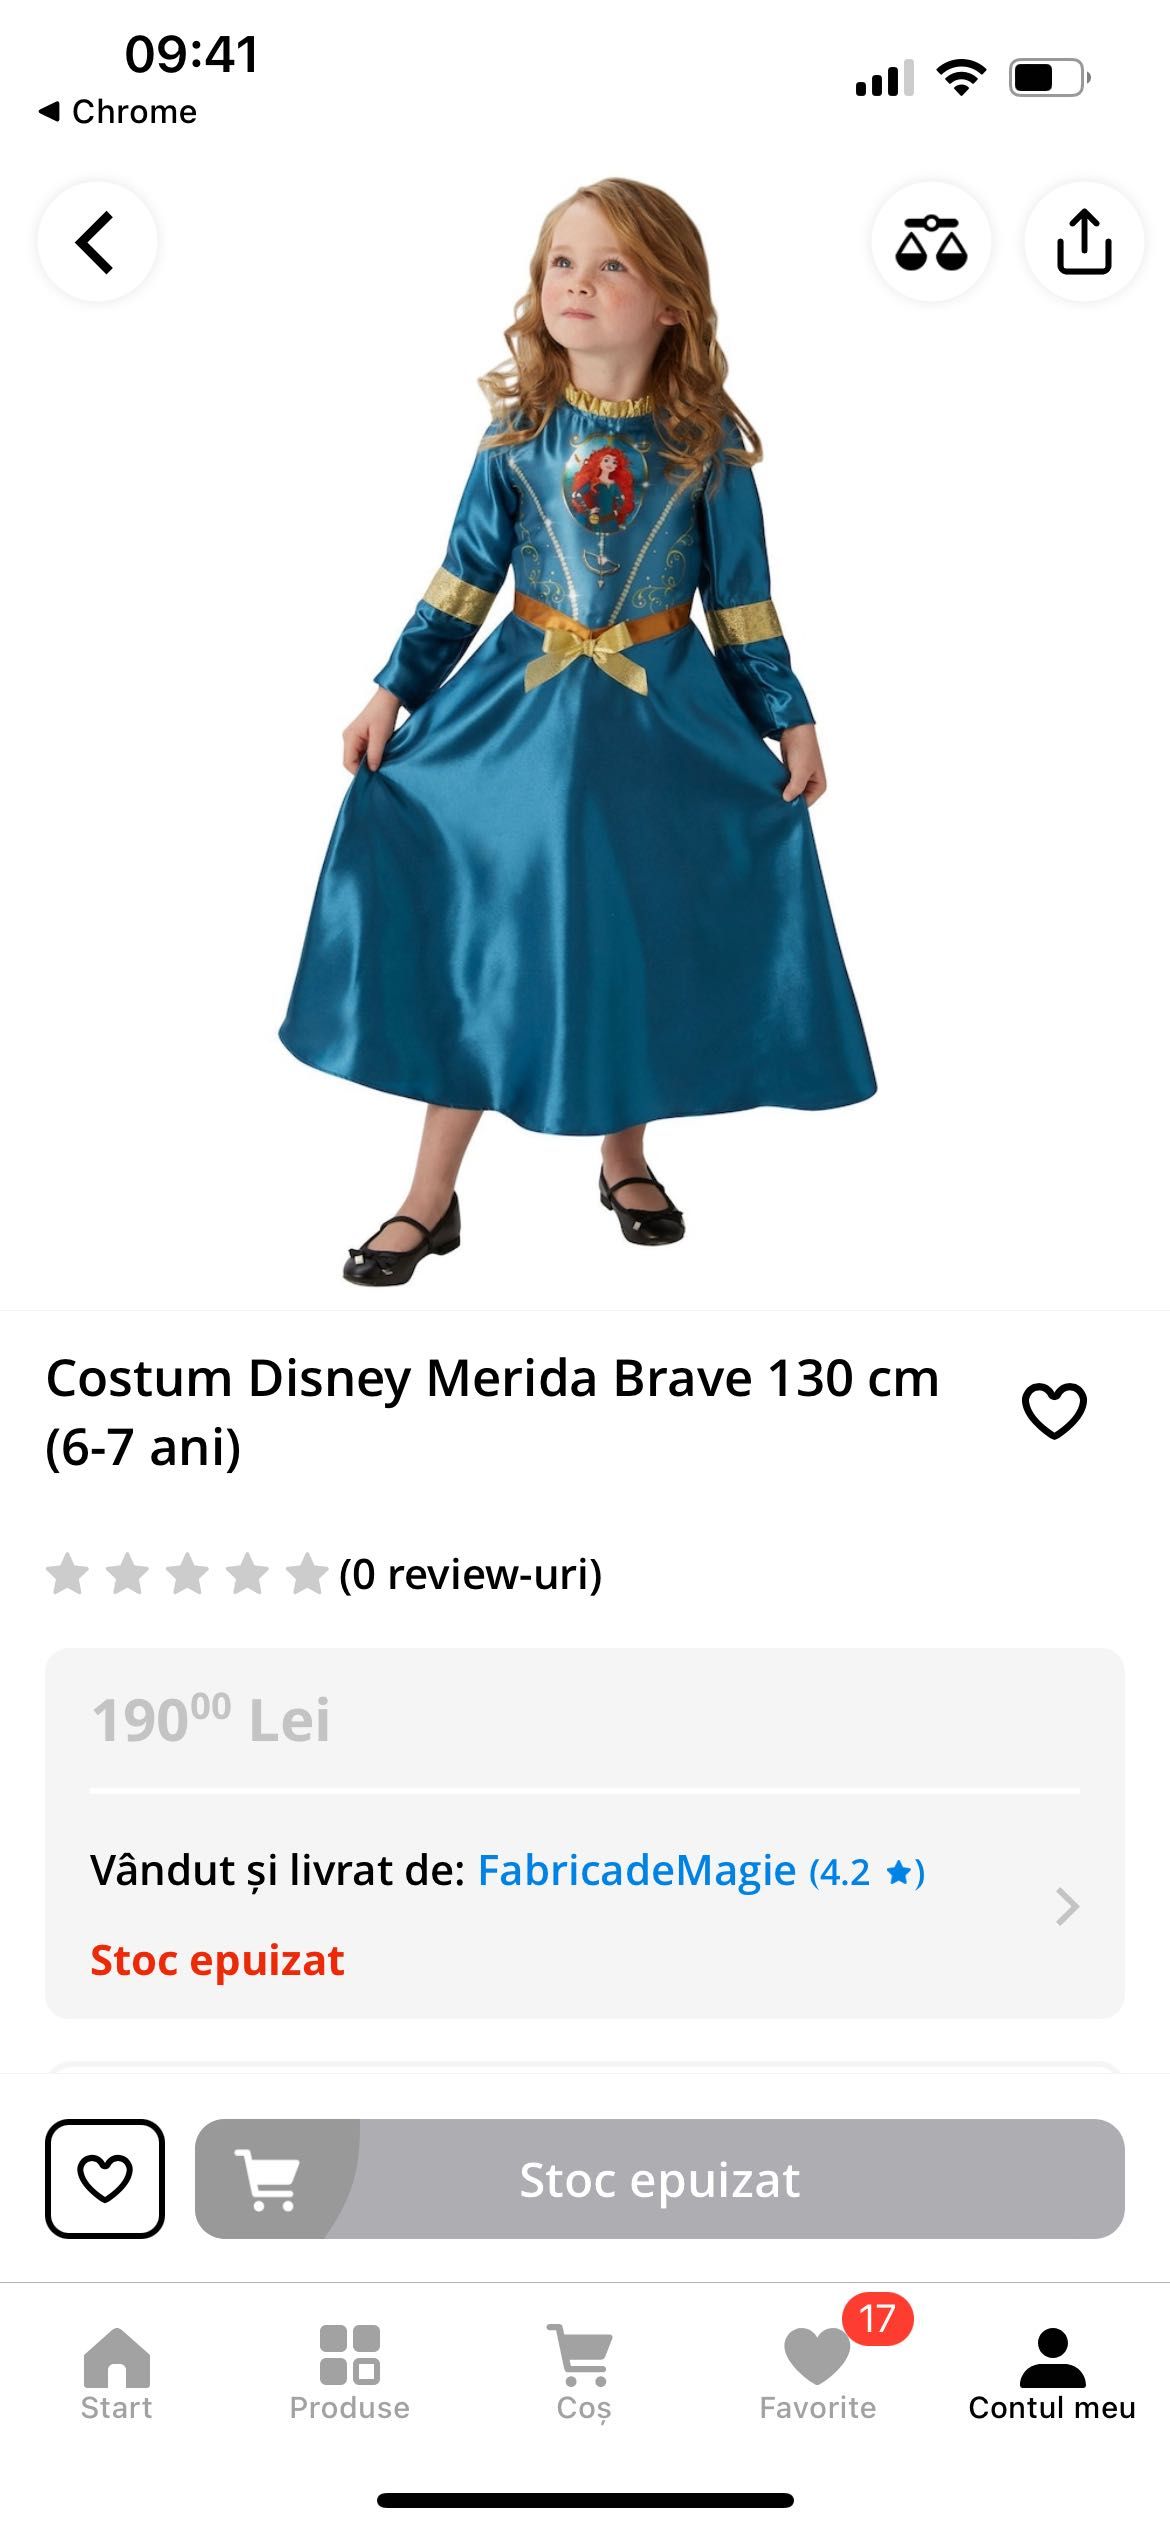 Costum Disney Merida neinfricata 6-7 ani